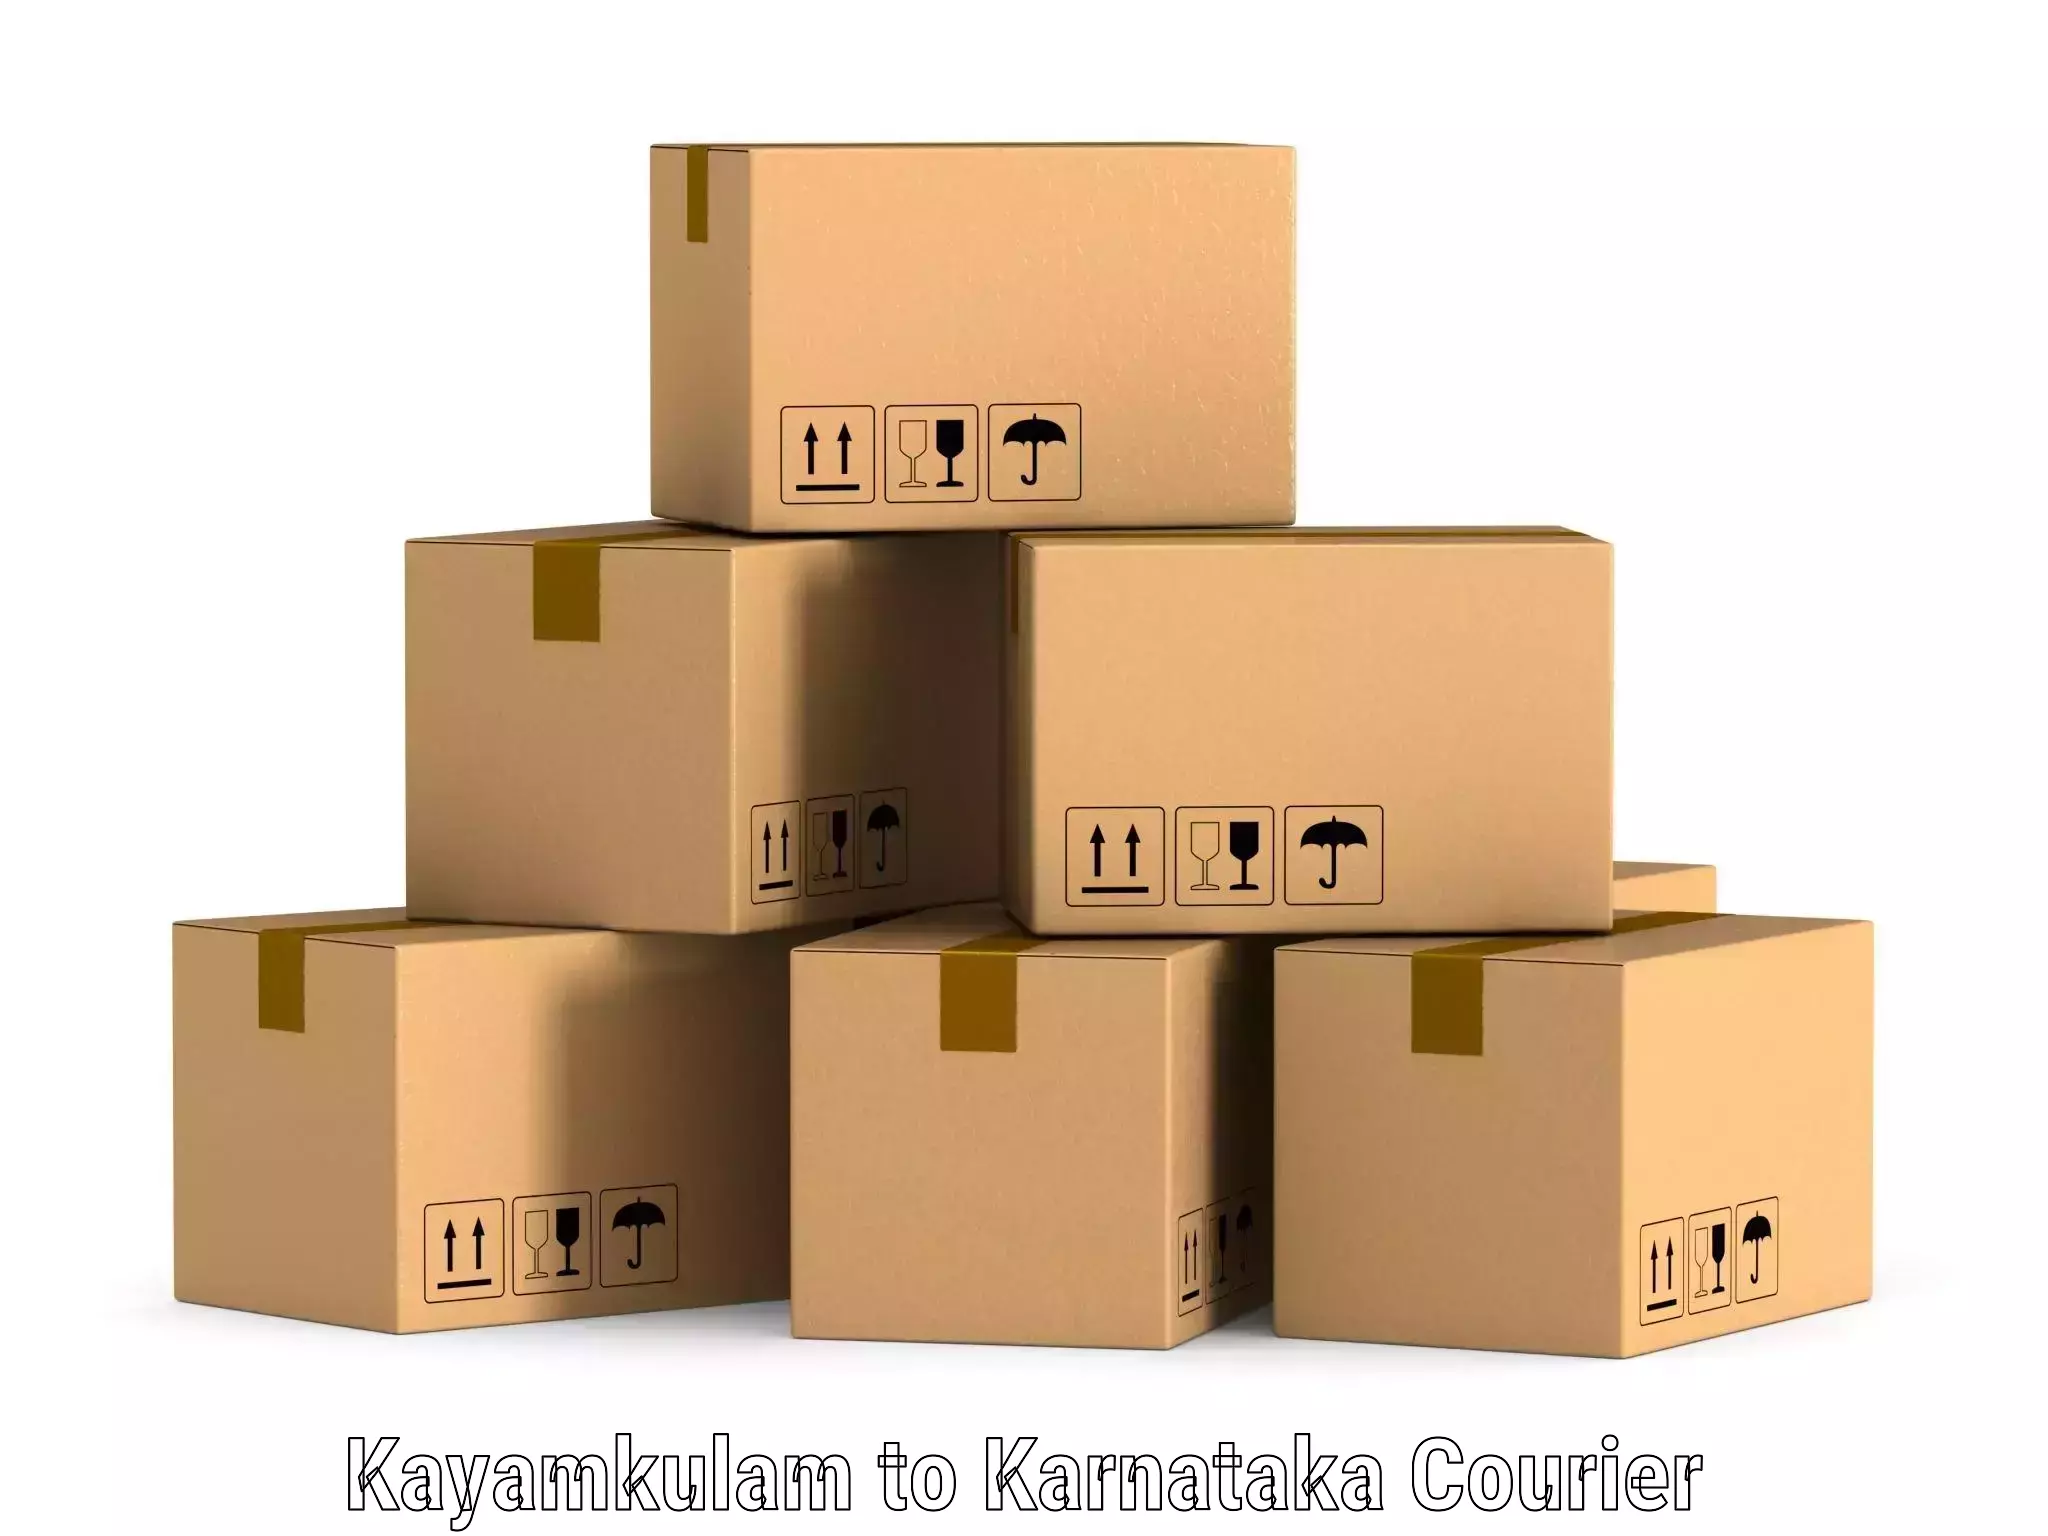 Comprehensive shipping network Kayamkulam to Kolar